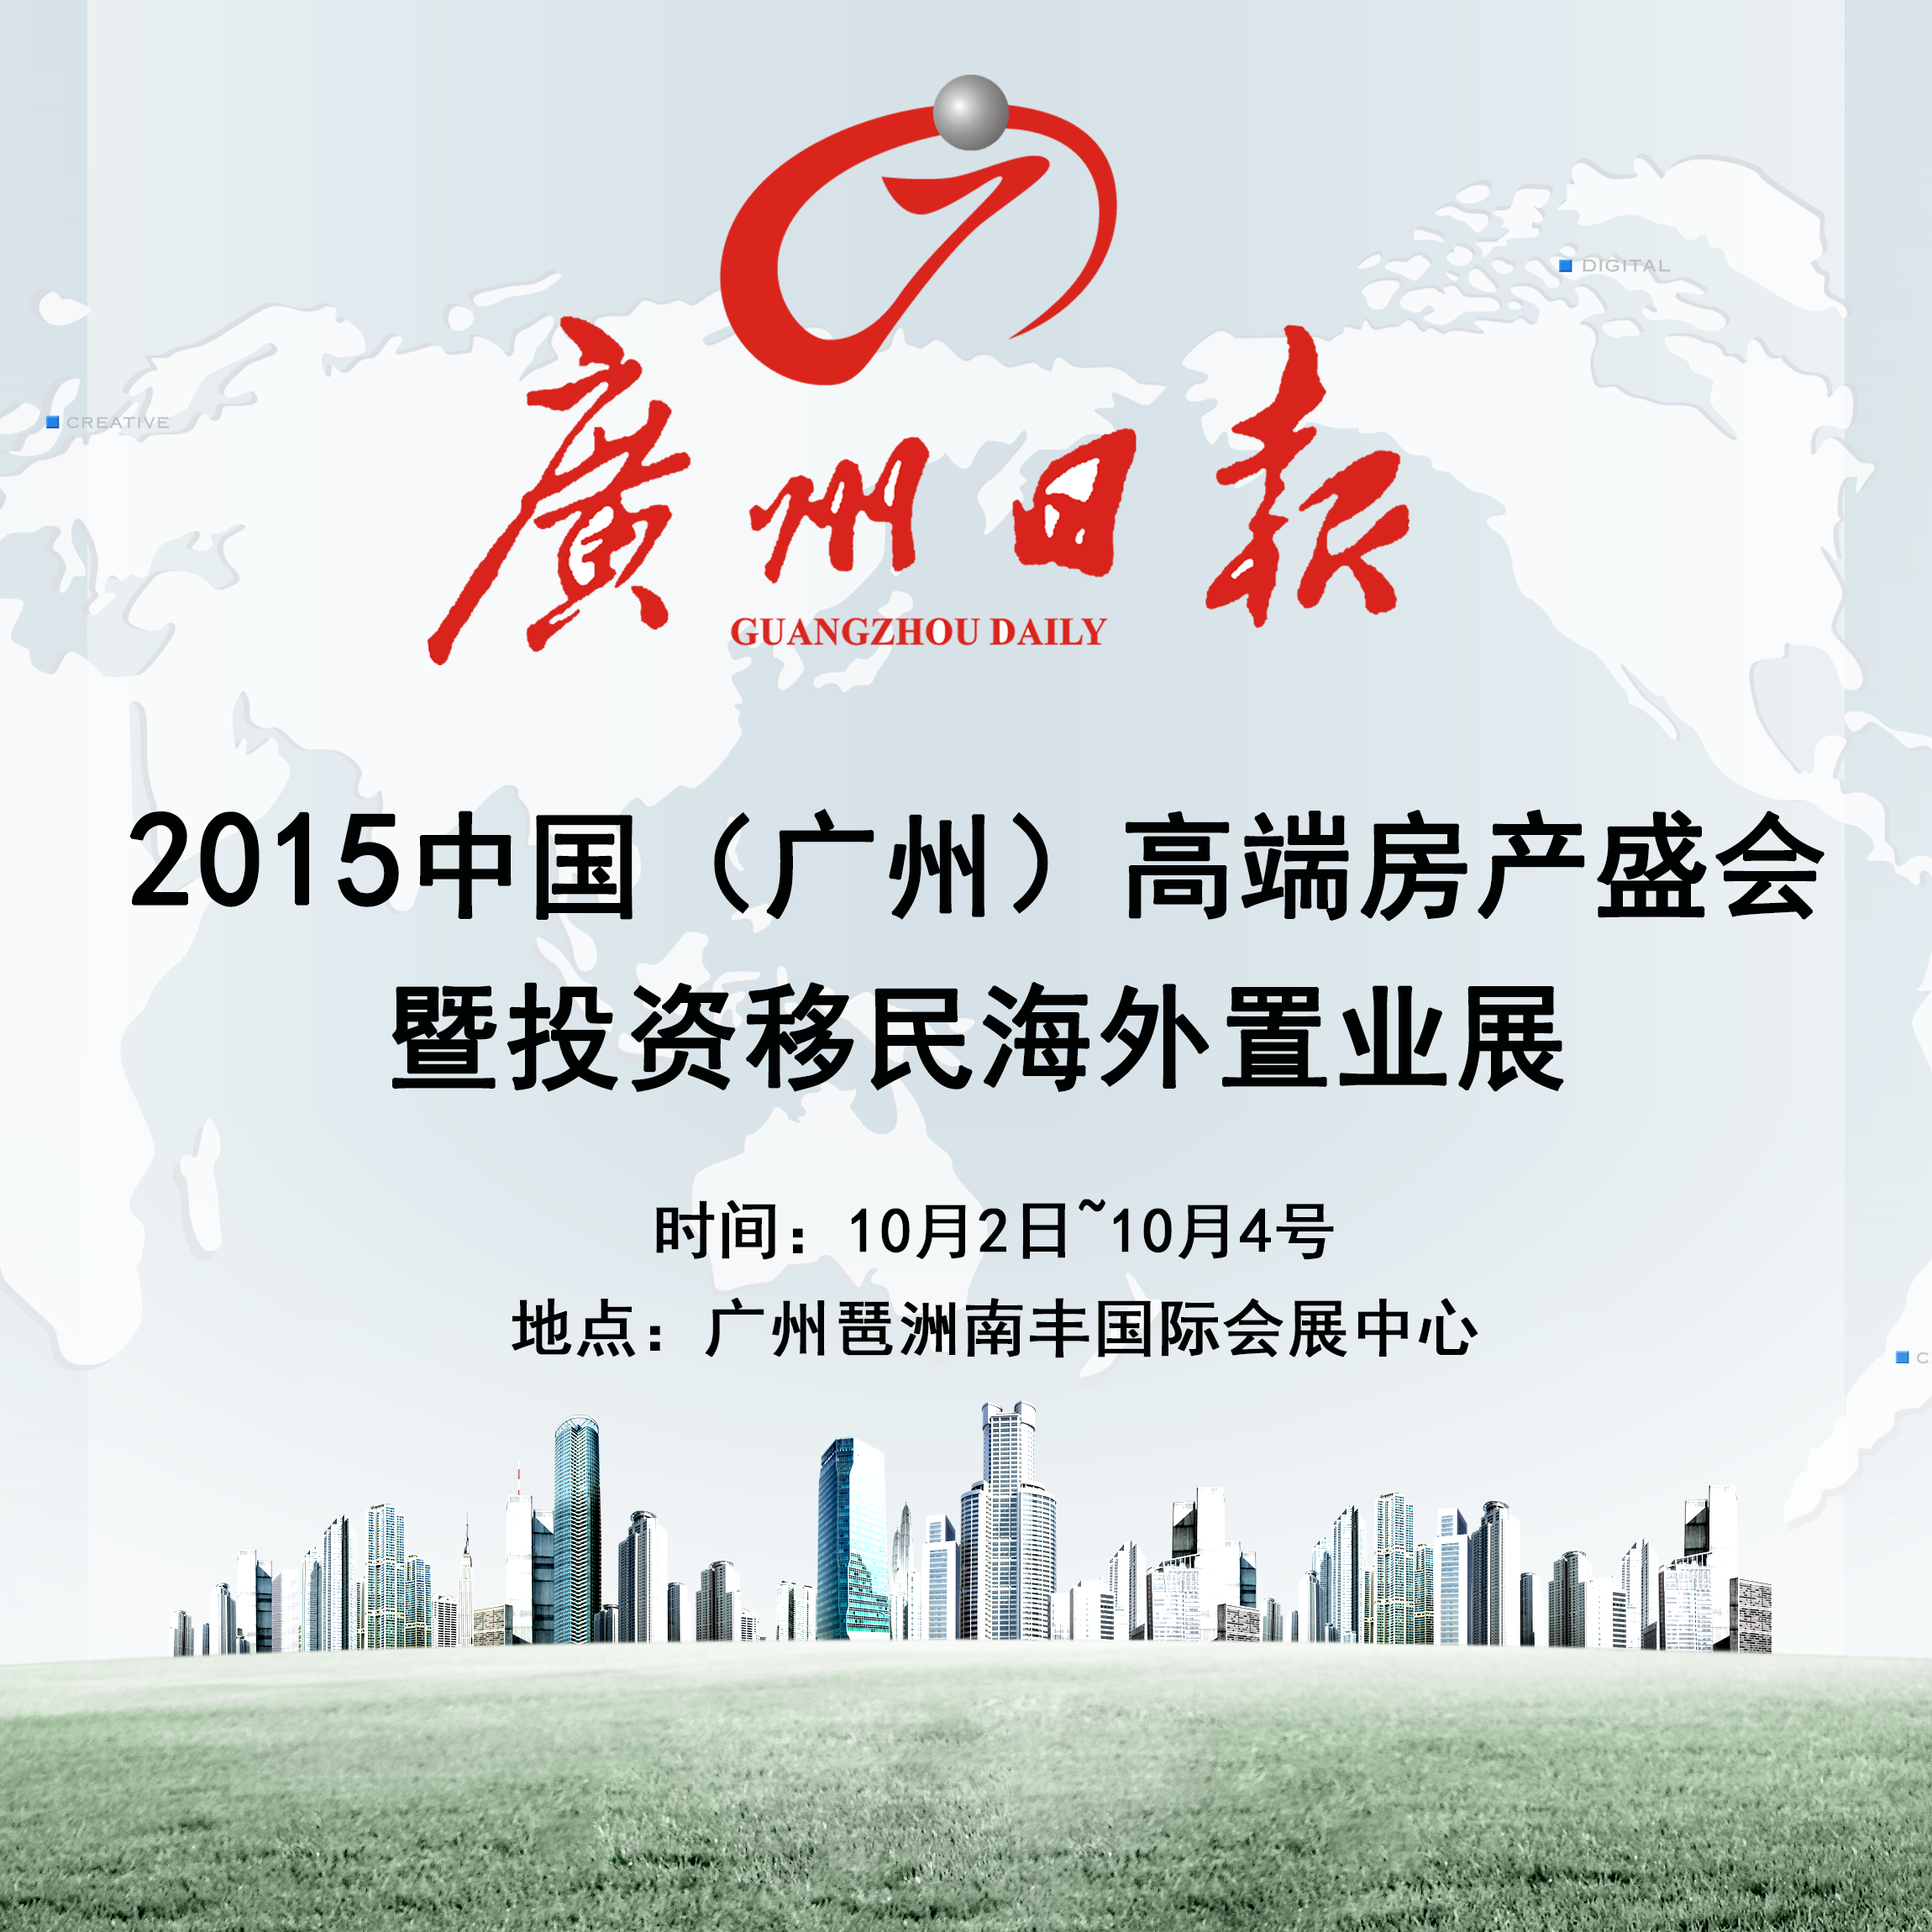 2015中国(广州)高端房产盛会暨投资移民海外置